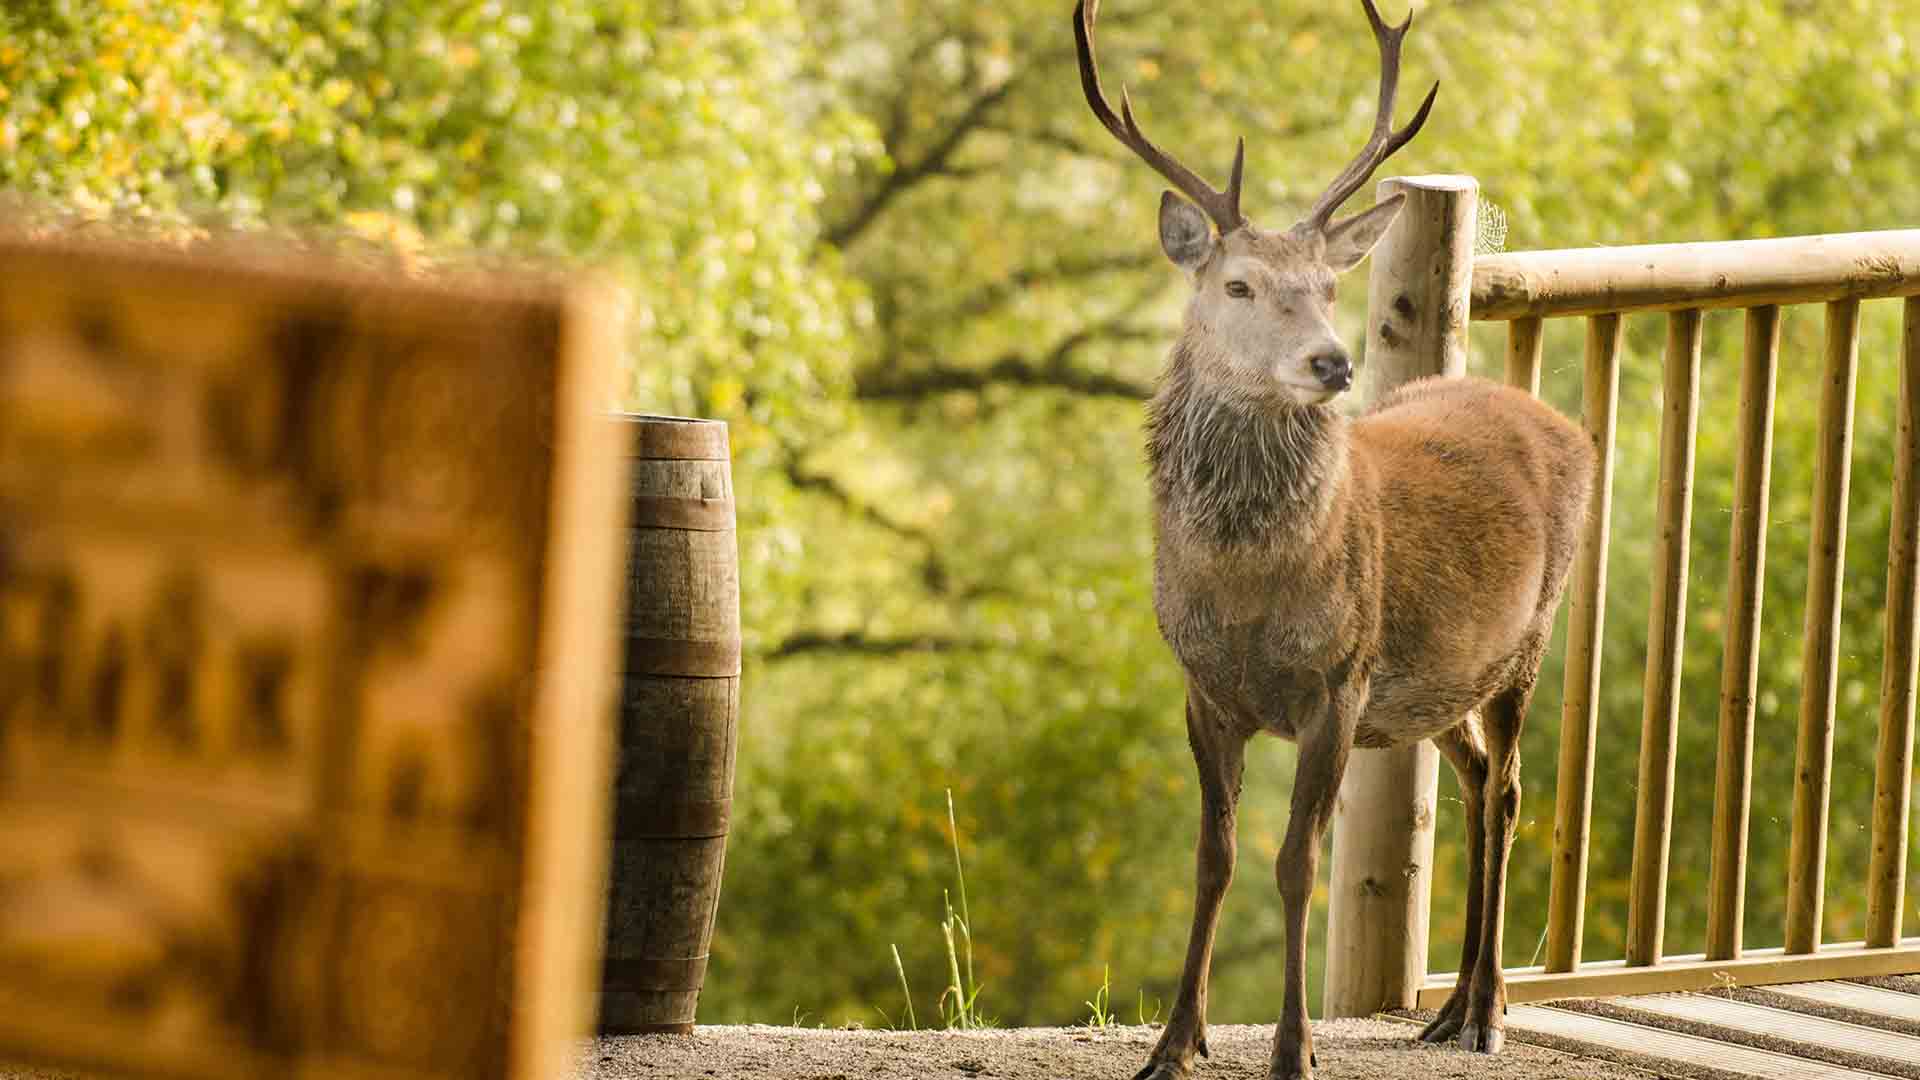 Red deer at Eagle Brae cabins